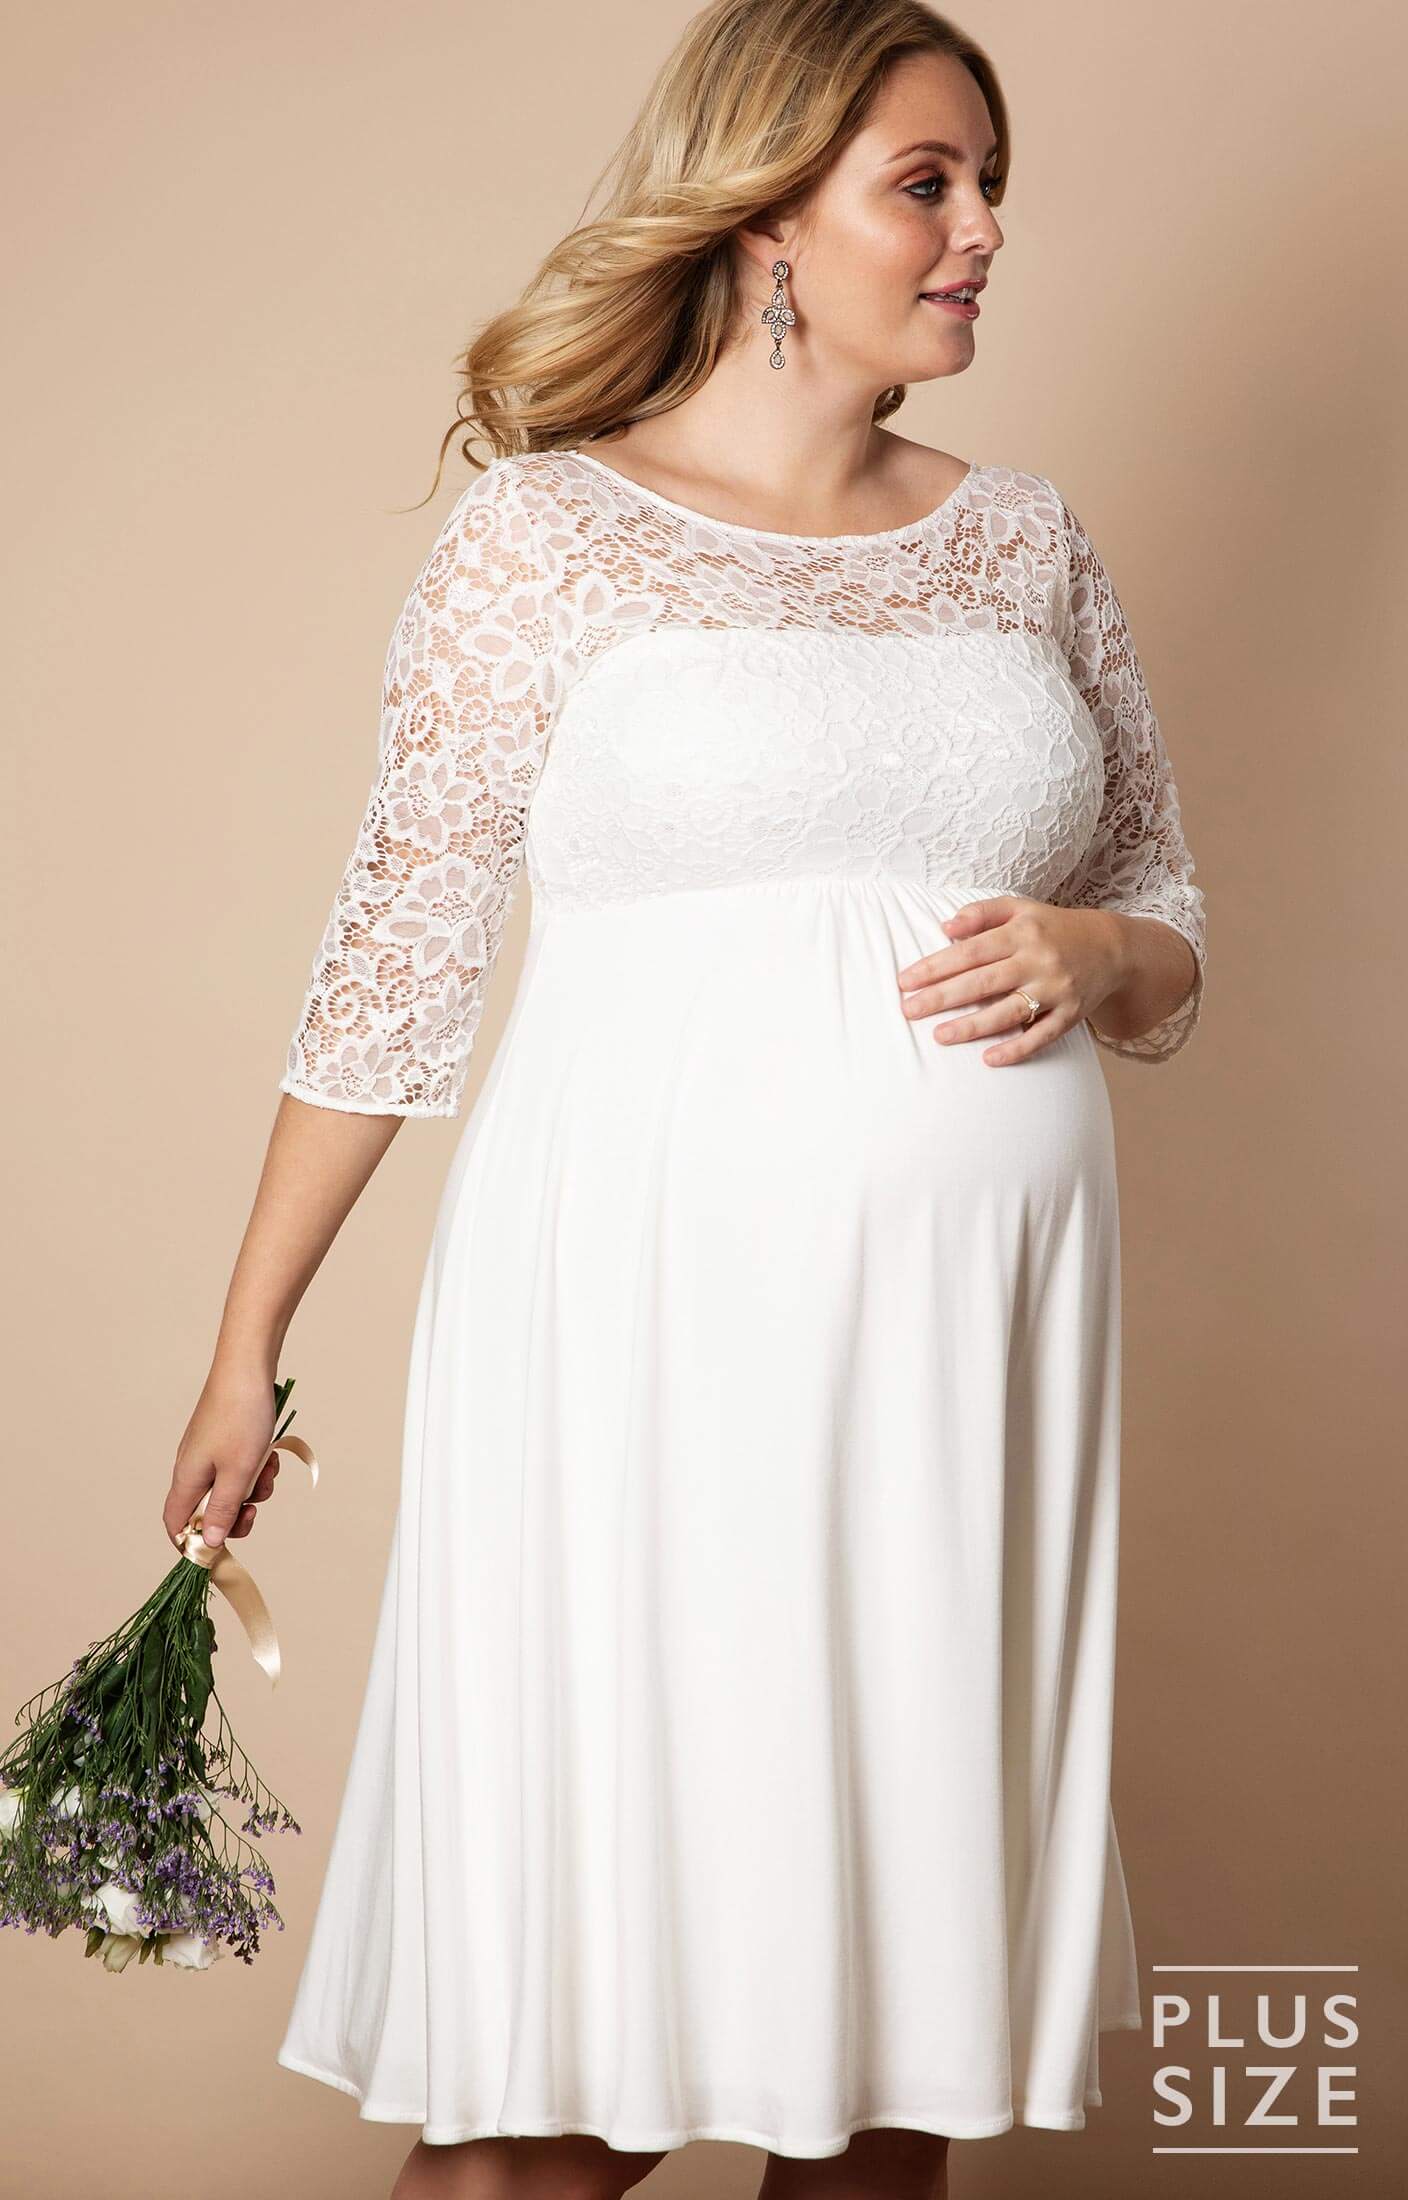 Lucia Plus Size Maternity Wedding Dress Short Ivory White - Maternity ...